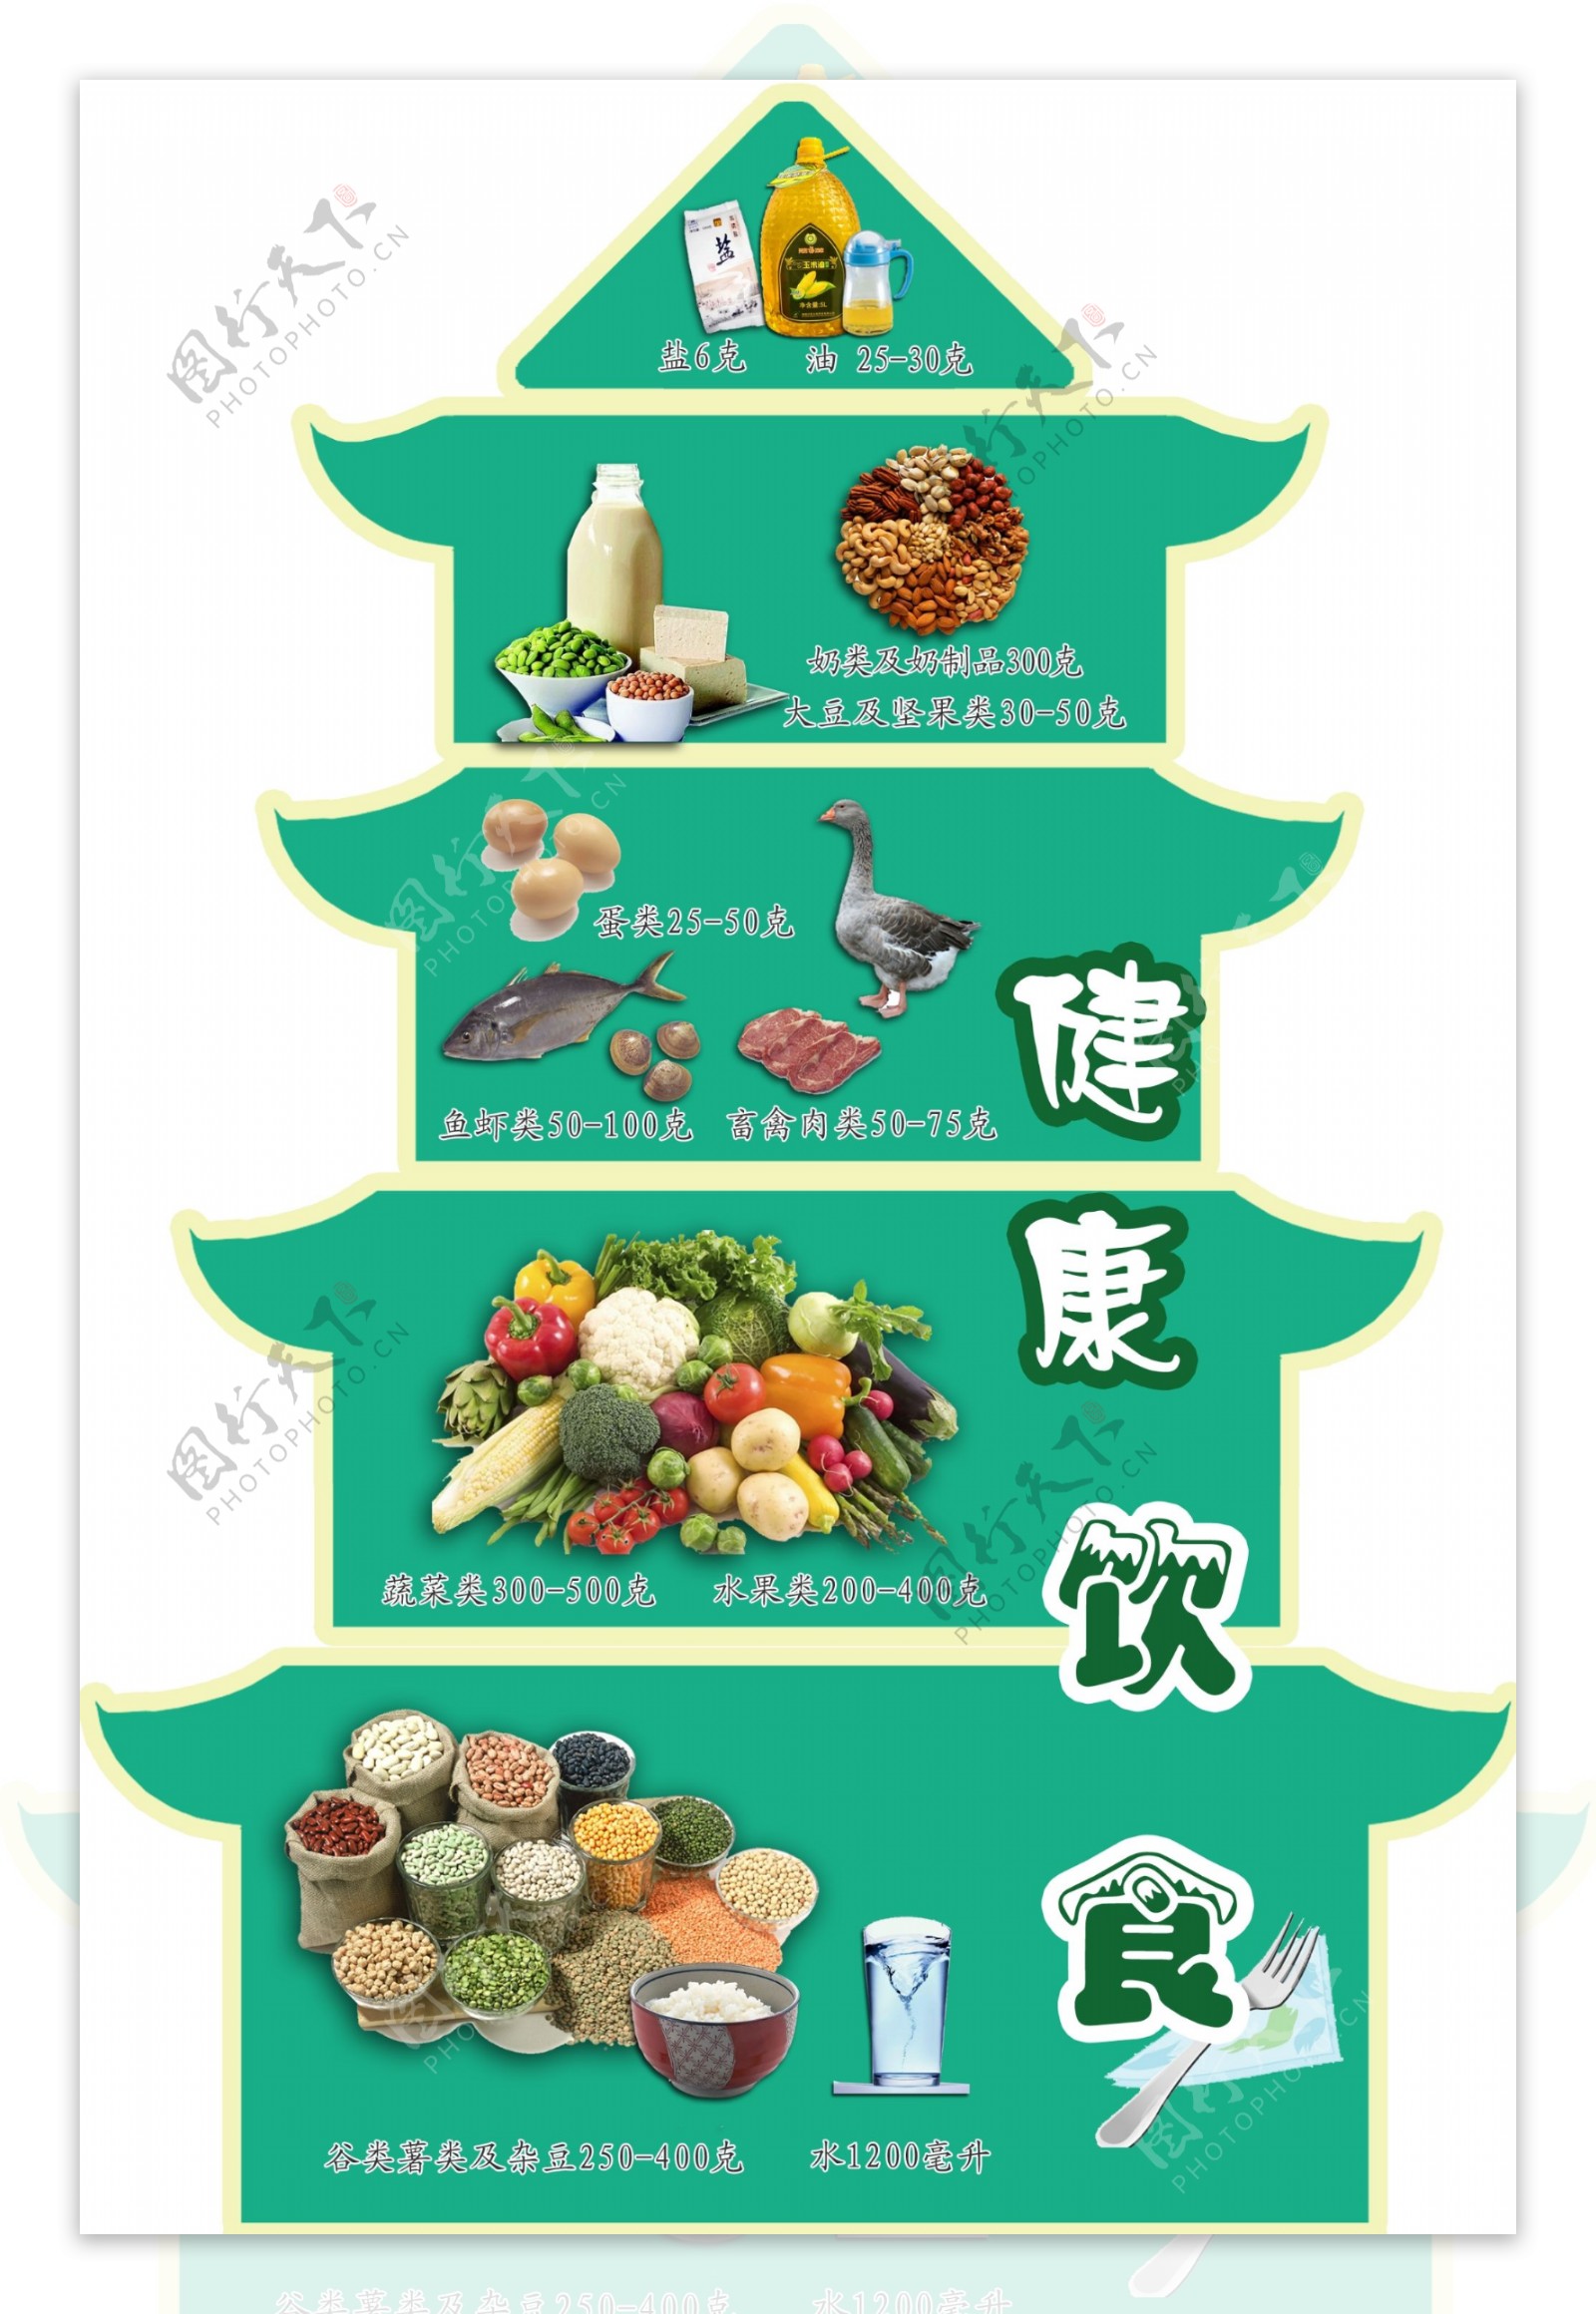 食物金字塔是什么？一张导图带你看懂-iMindMap中文网站